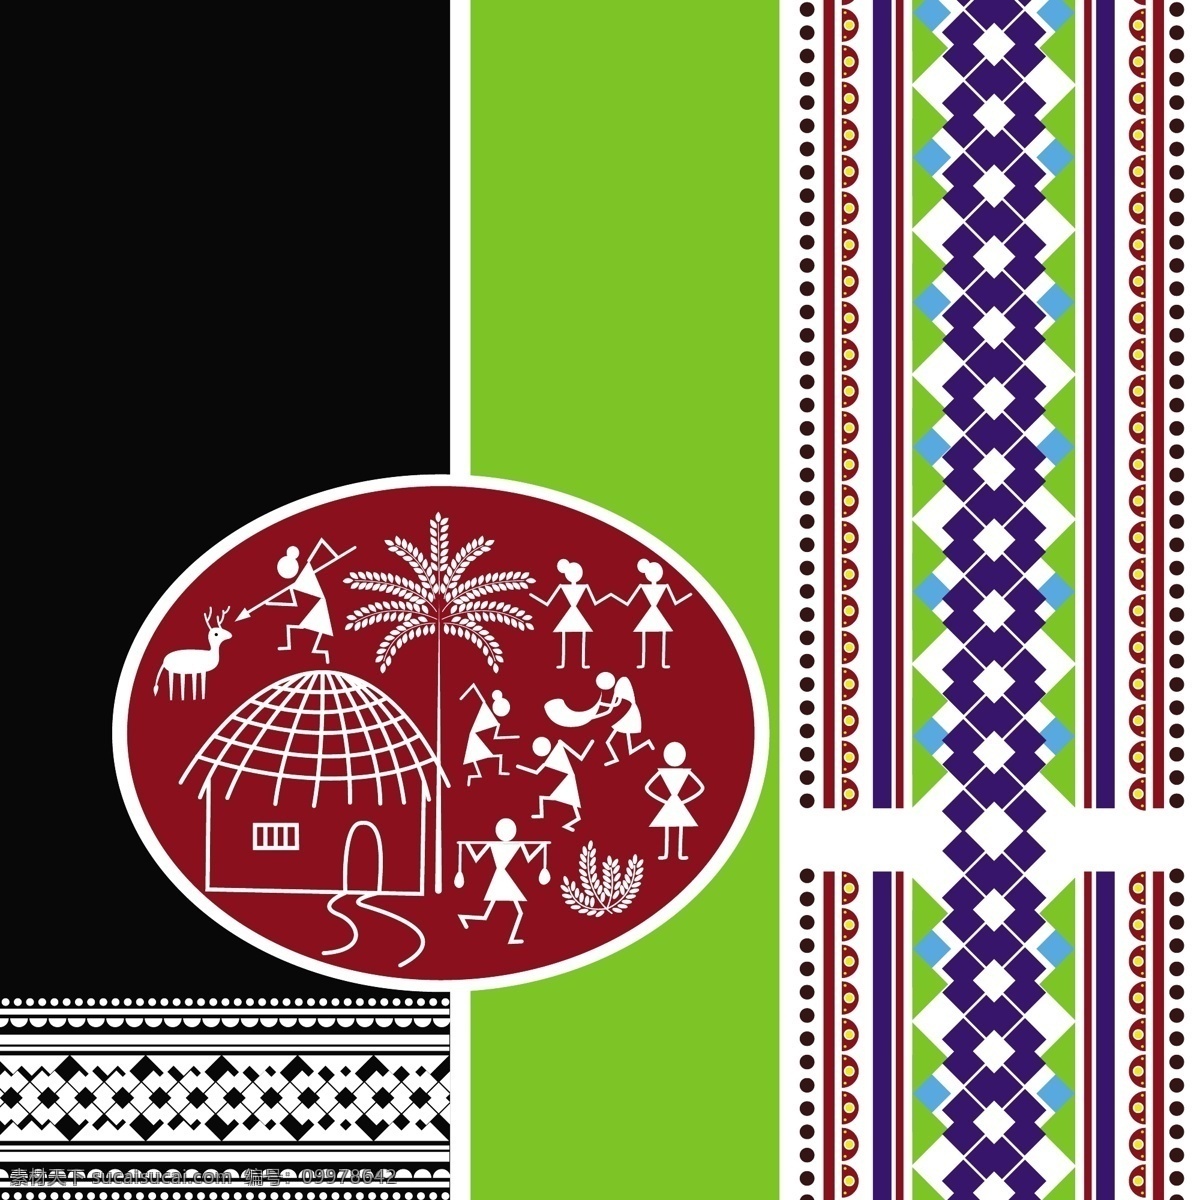 印度民族图案 印度花纹 印花图片 印花 印度传统图案 印度布料图案 印度元素